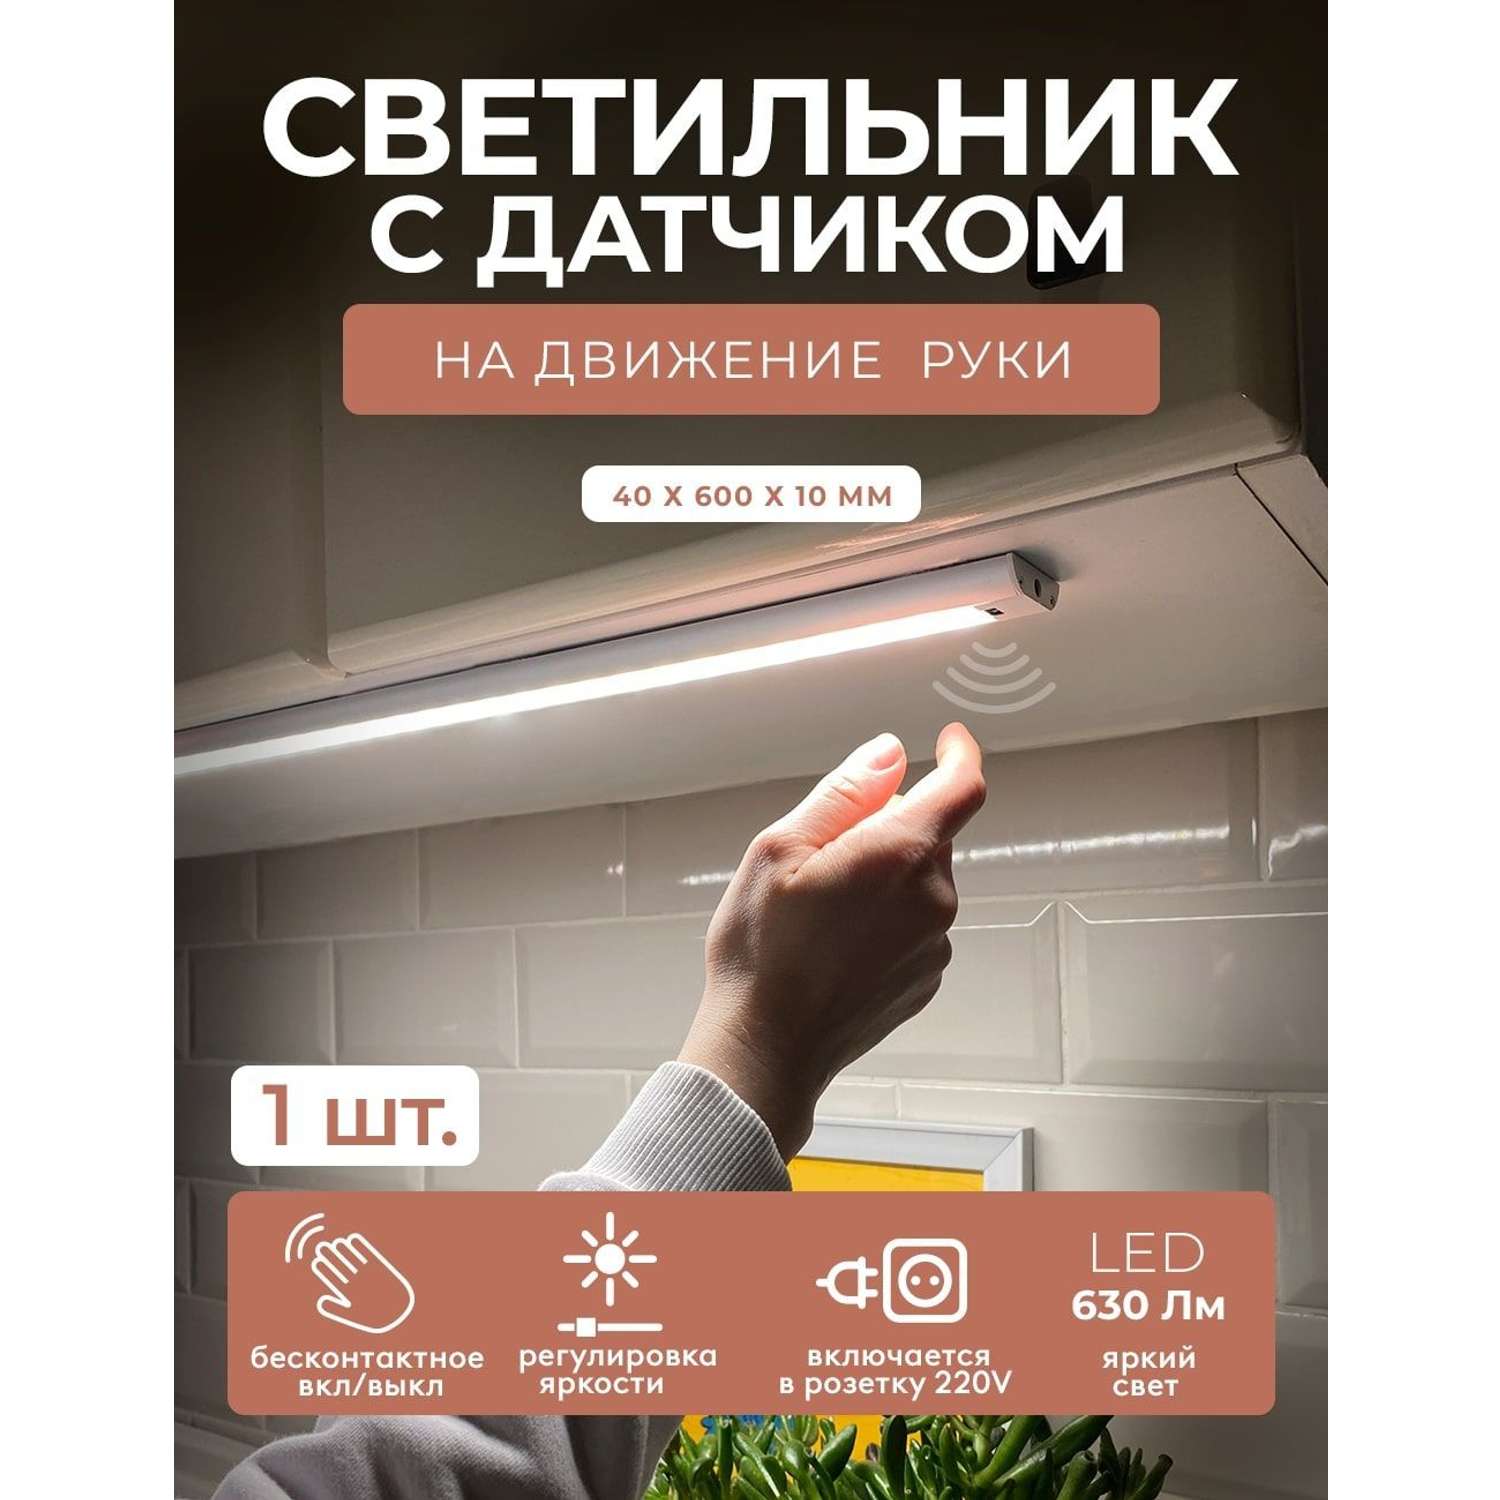 Светодиодный светильник ГЕЛЕОС LED подсветка 60см P61 9Вт hand wave sensor 60см для детской кухни гаража - фото 2